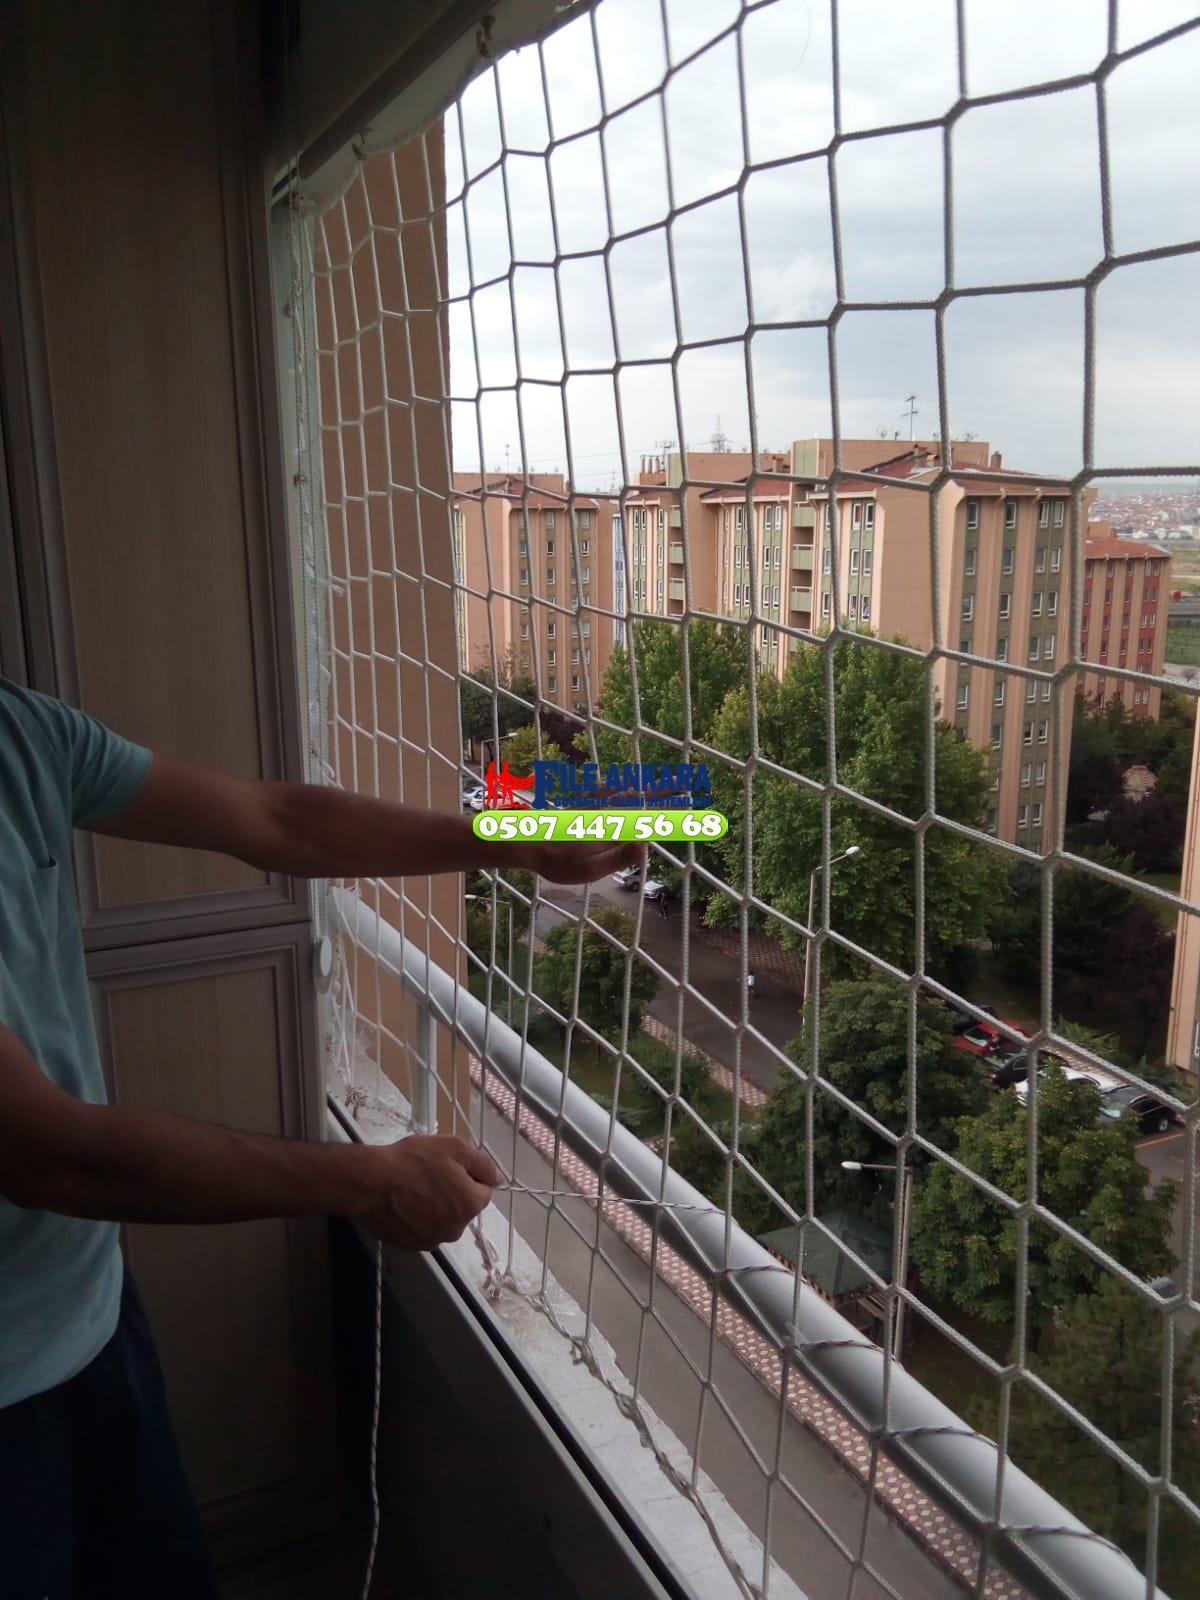 Ankara Temelli Balkon  koruma filesi - Merdiven filesi - En ucuz balkon güvenlik filesi satış ve montajı 0507 447 56 68